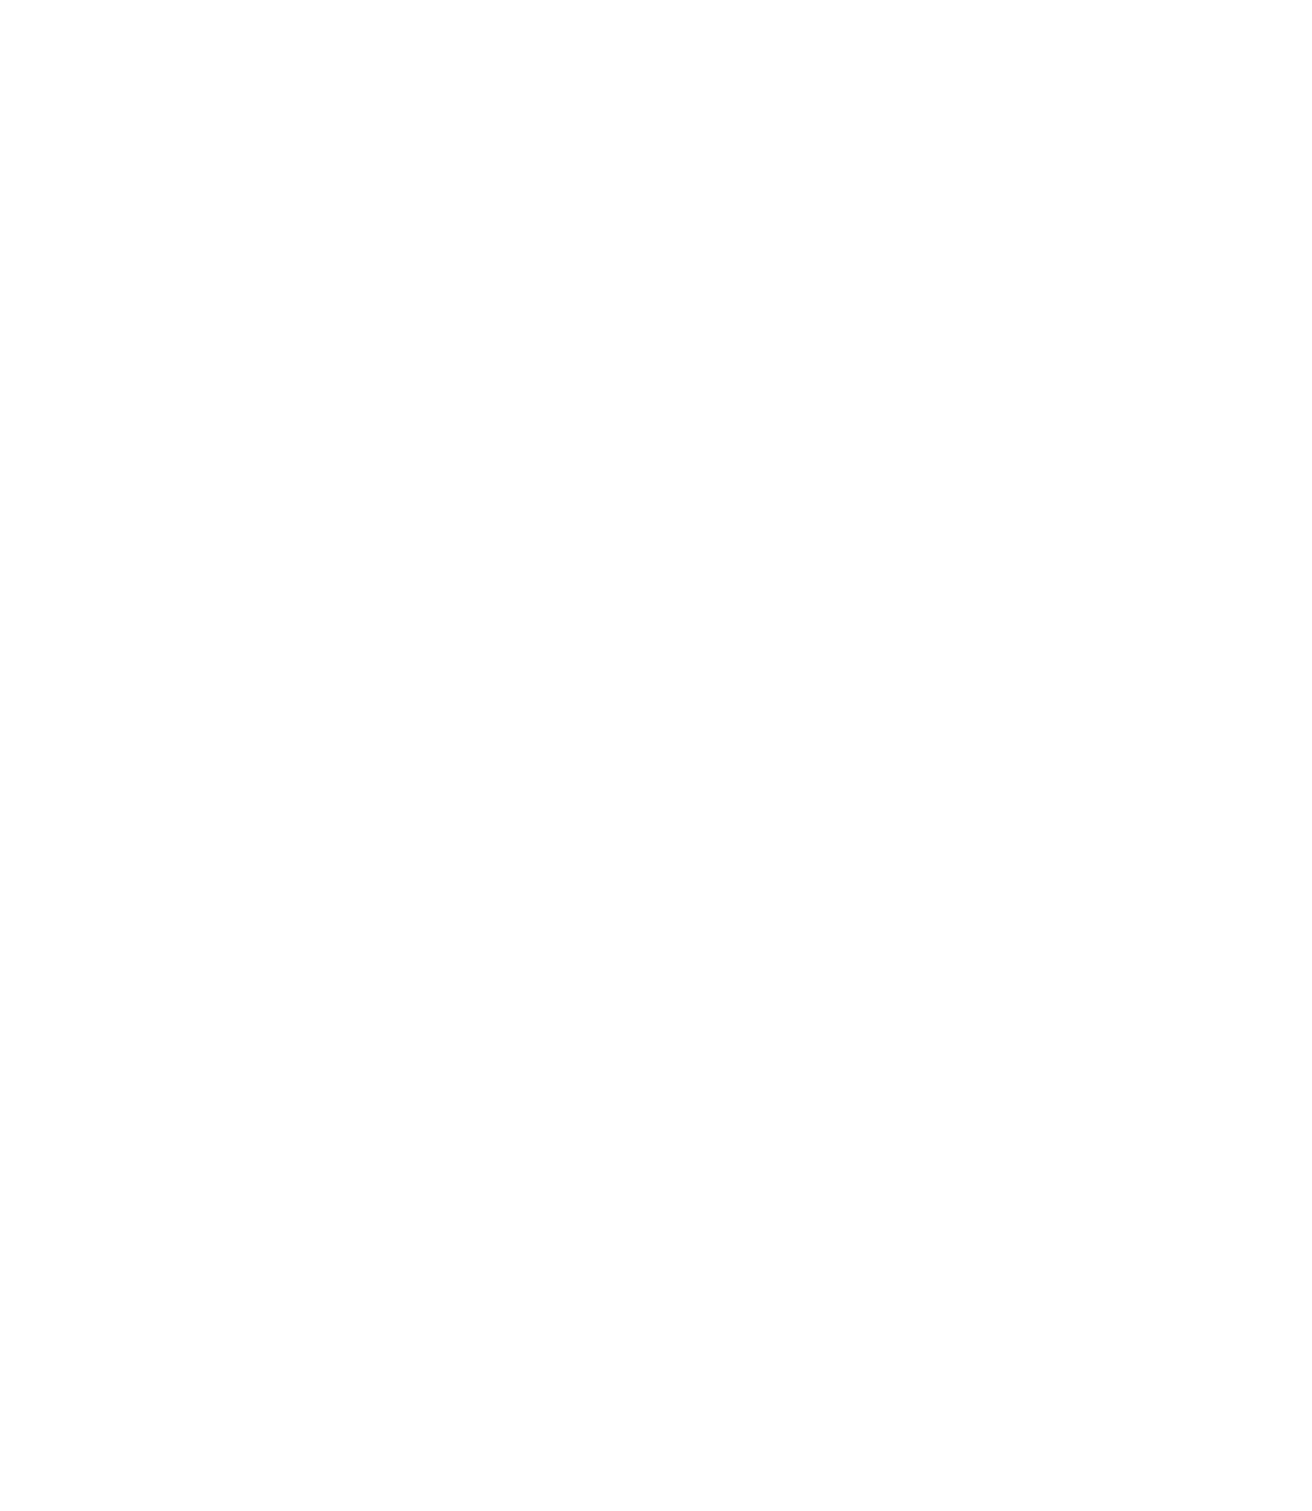 Cambridge Bancorp logo pour fonds sombres (PNG transparent)